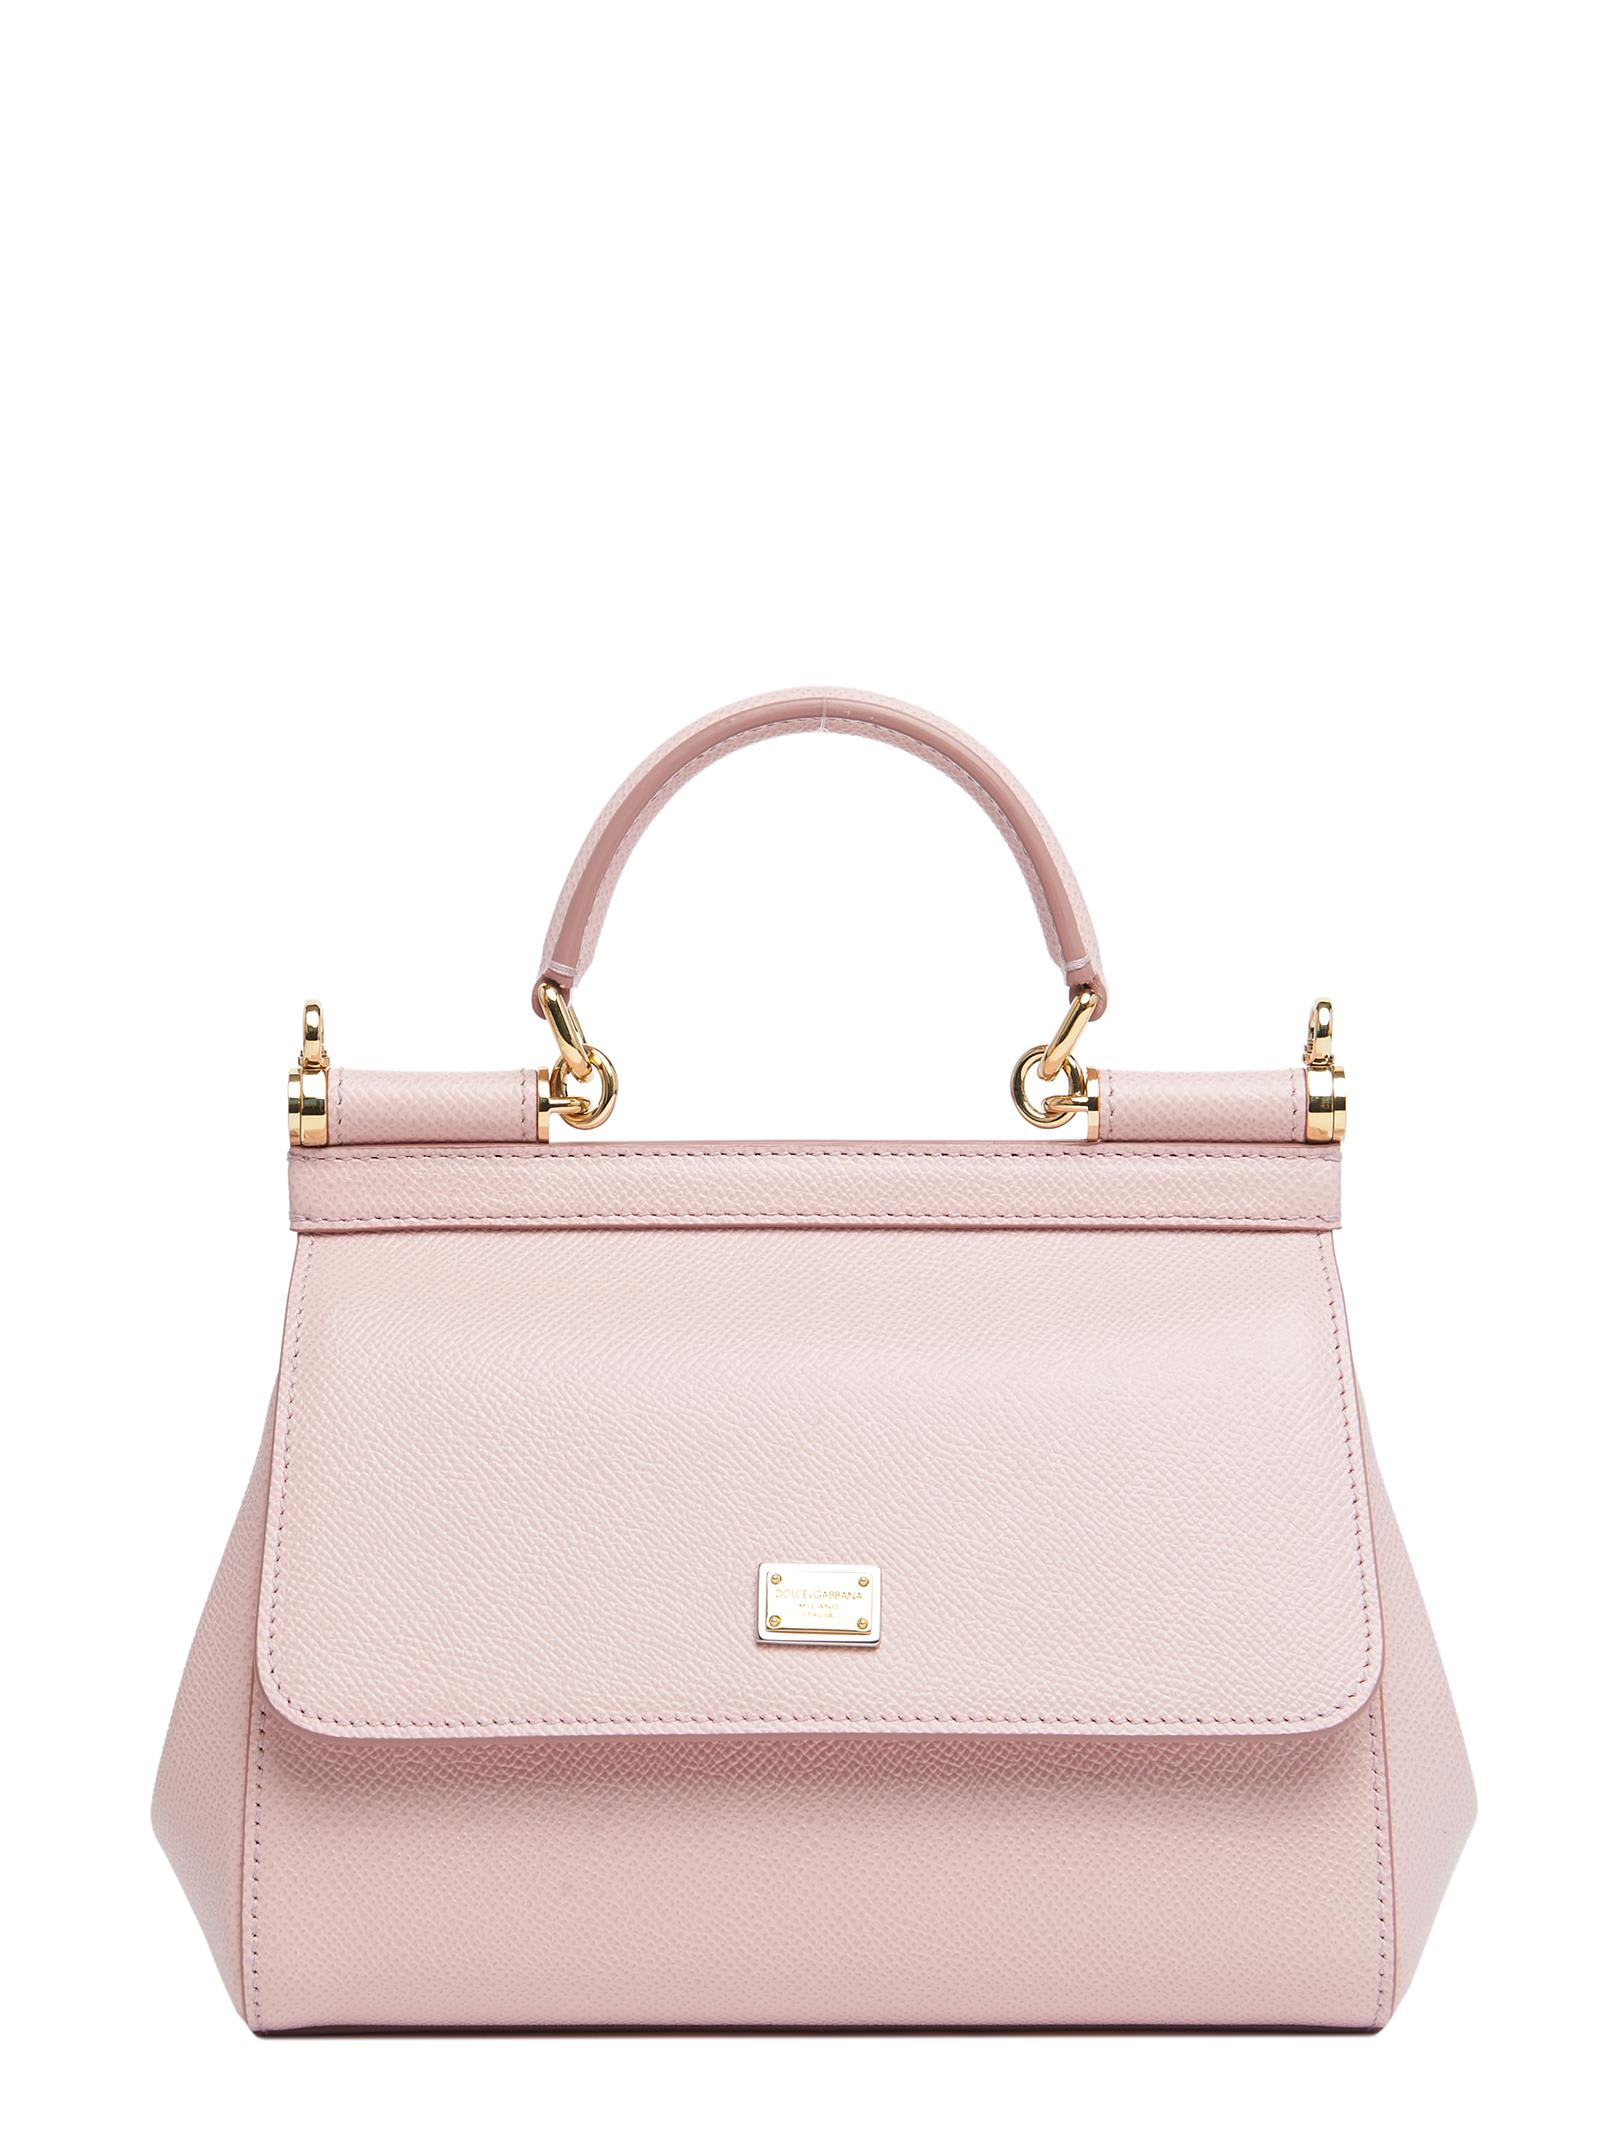 Dolce & Gabbana Bag In Pink